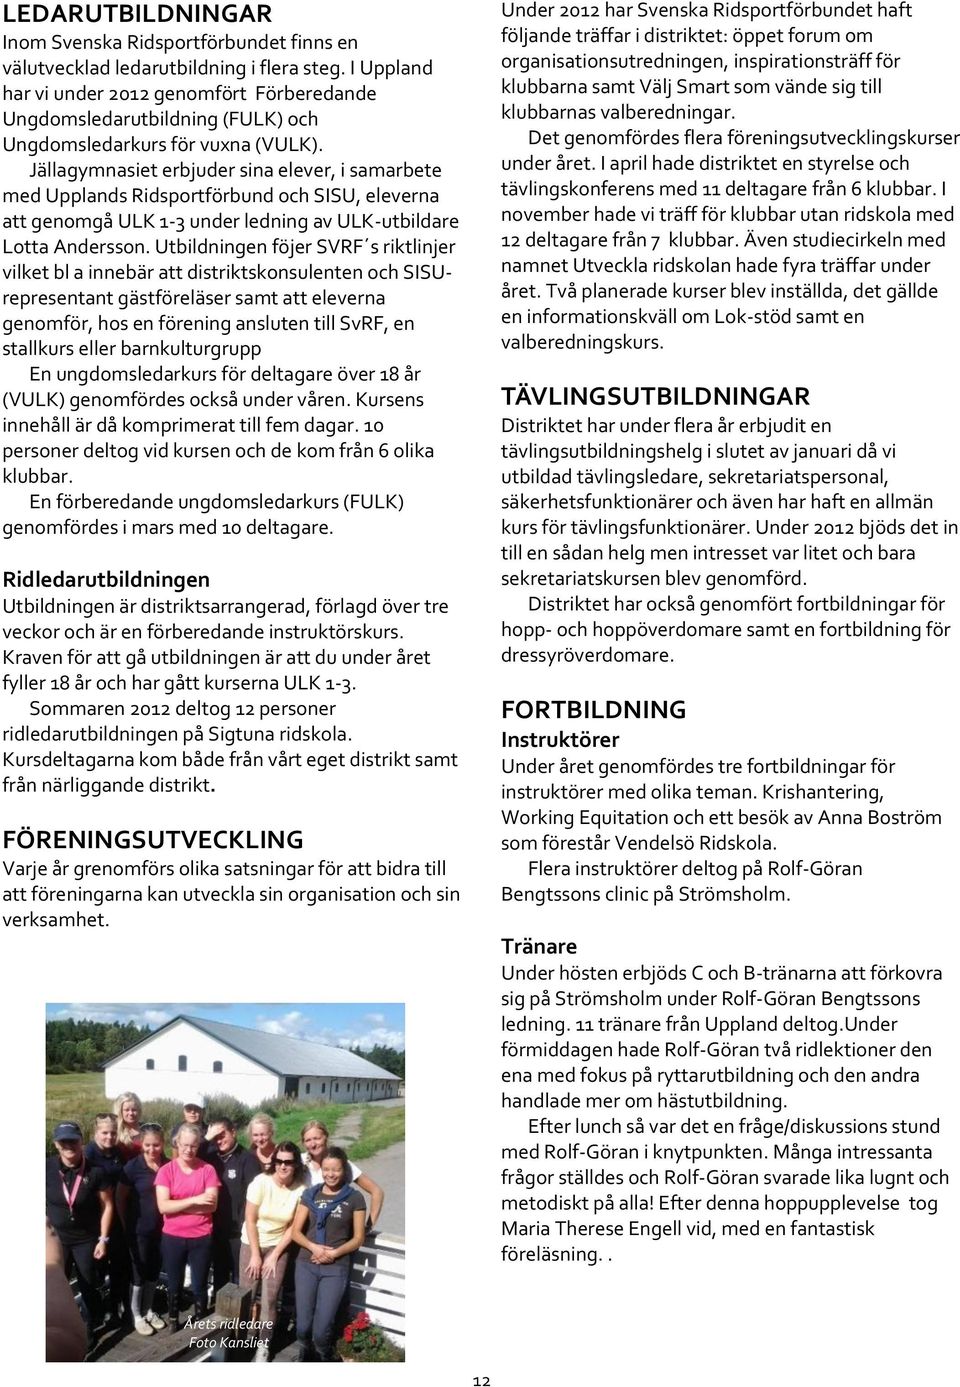 Jällagymnasiet erbjuder sina elever, i samarbete med Upplands Ridsportförbund och SISU, eleverna att genomgå ULK 1-3 under ledning av ULK-utbildare Lotta Andersson.